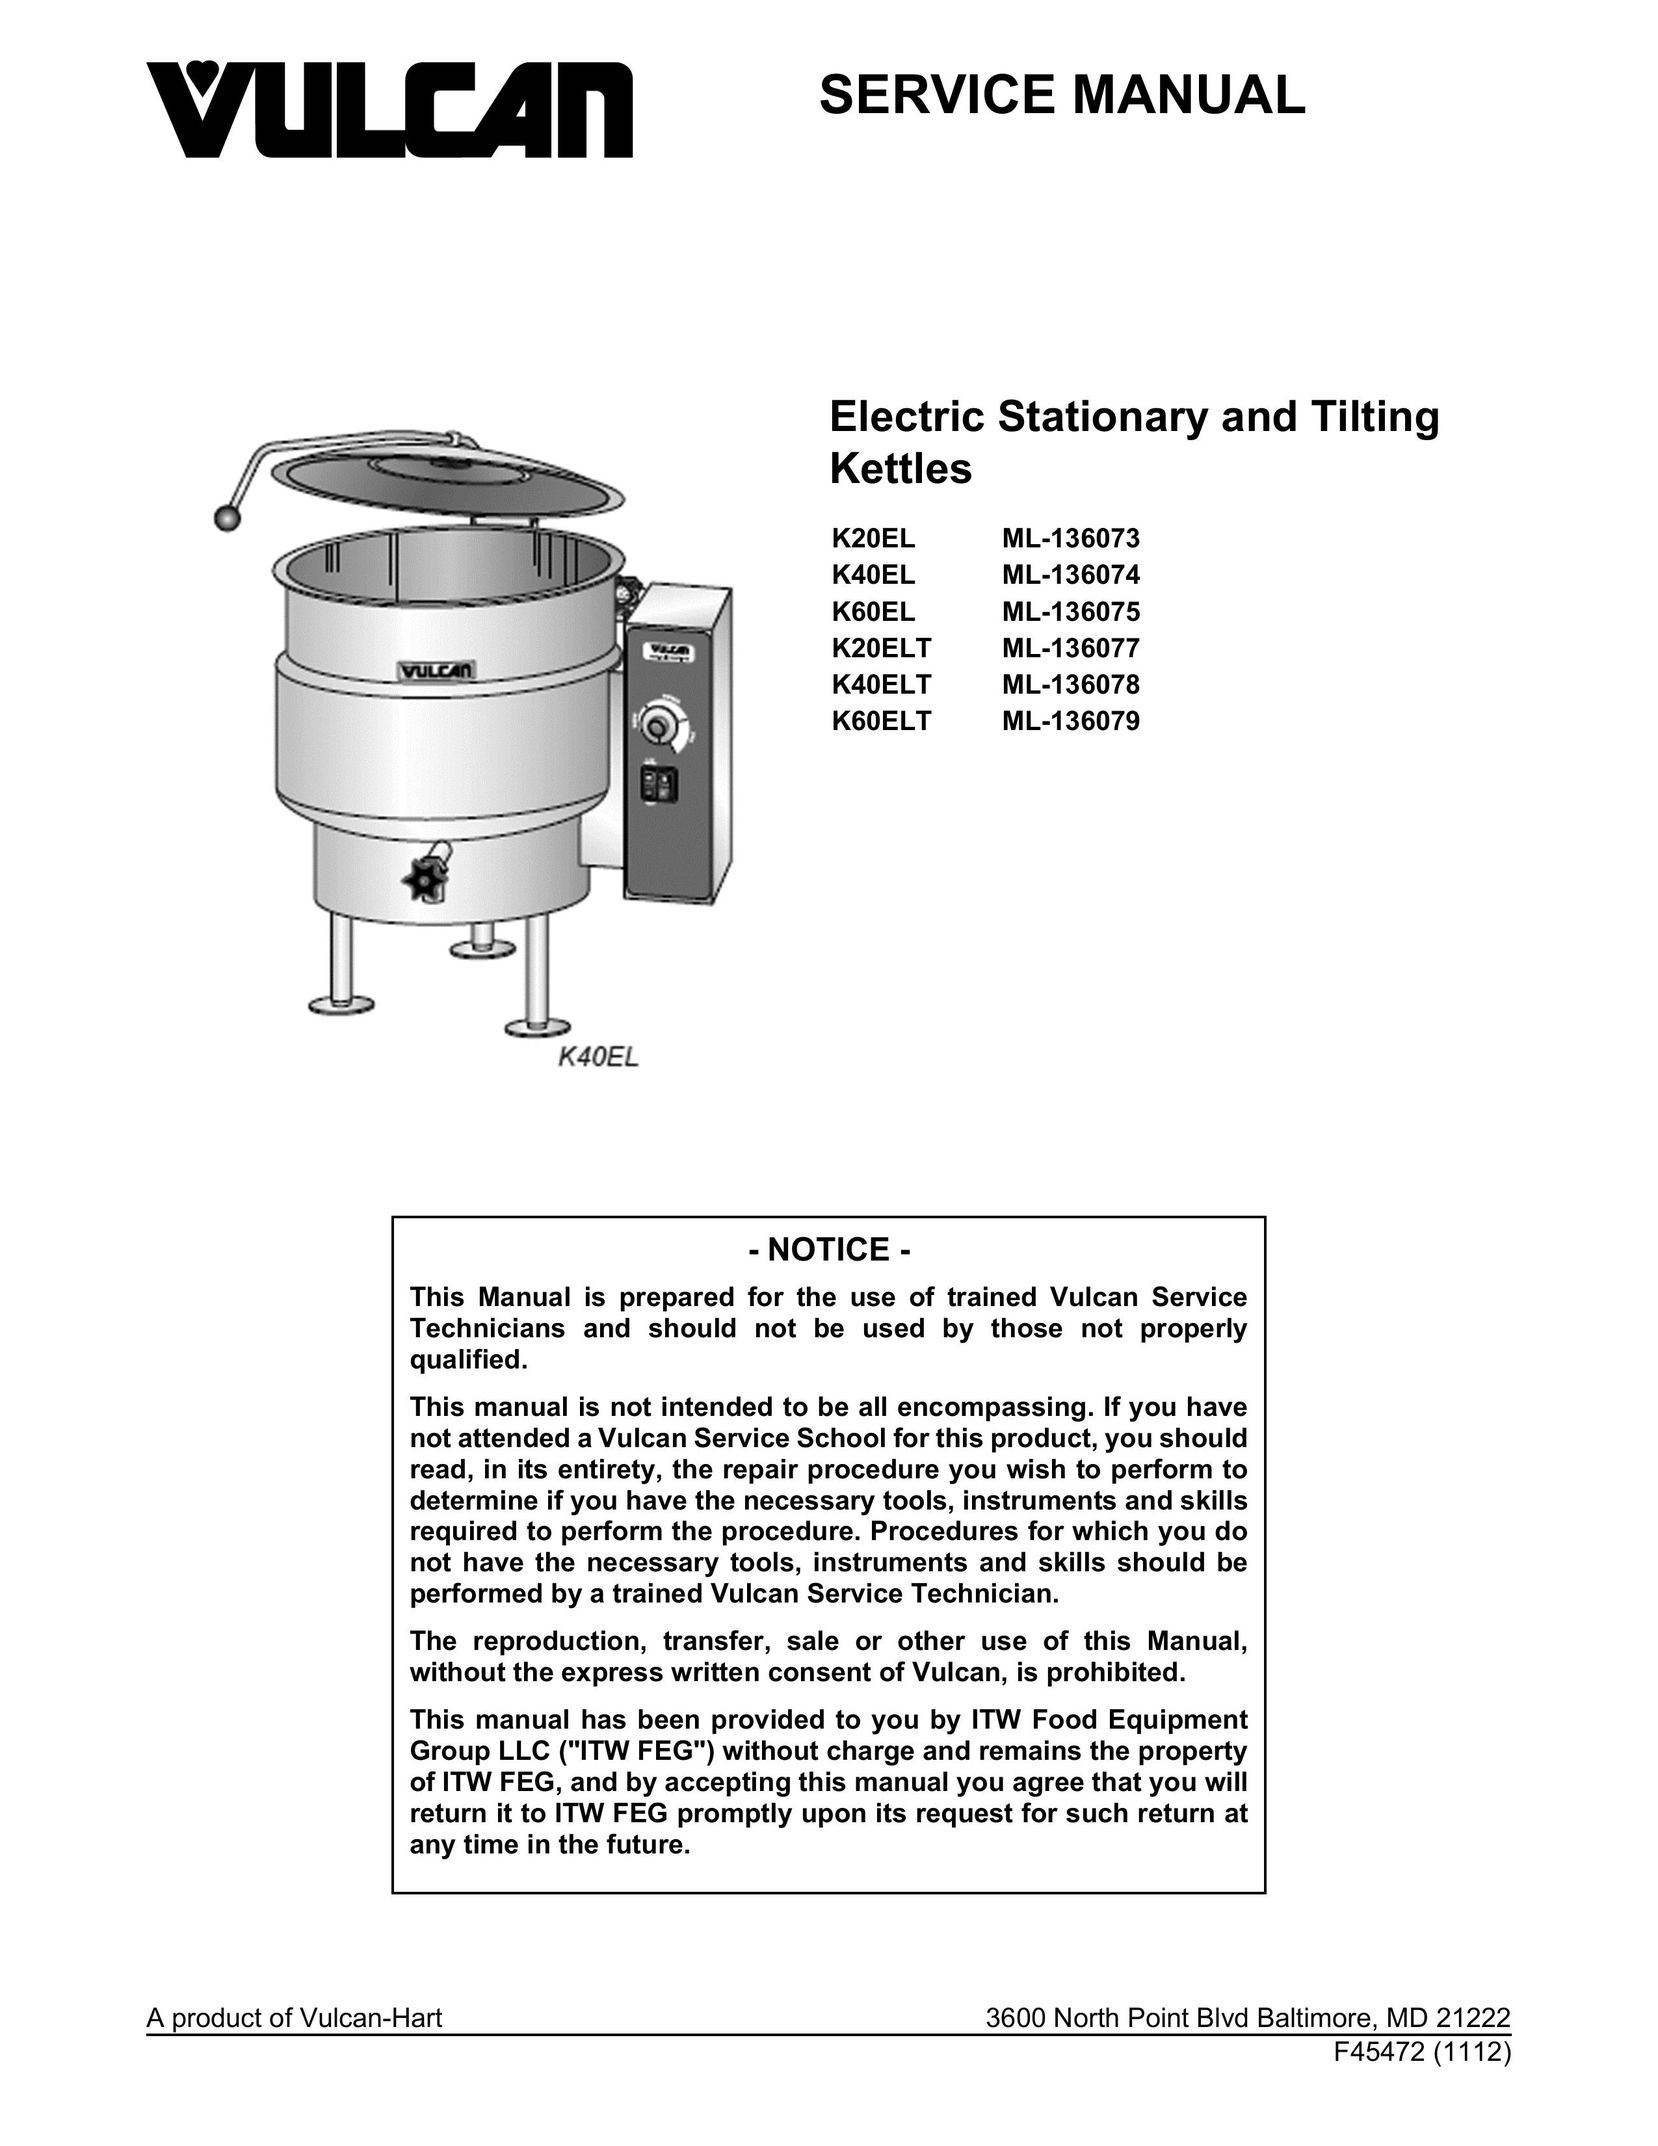 Vulcan-Hart K40EL ML-136074 Hot Beverage Maker User Manual